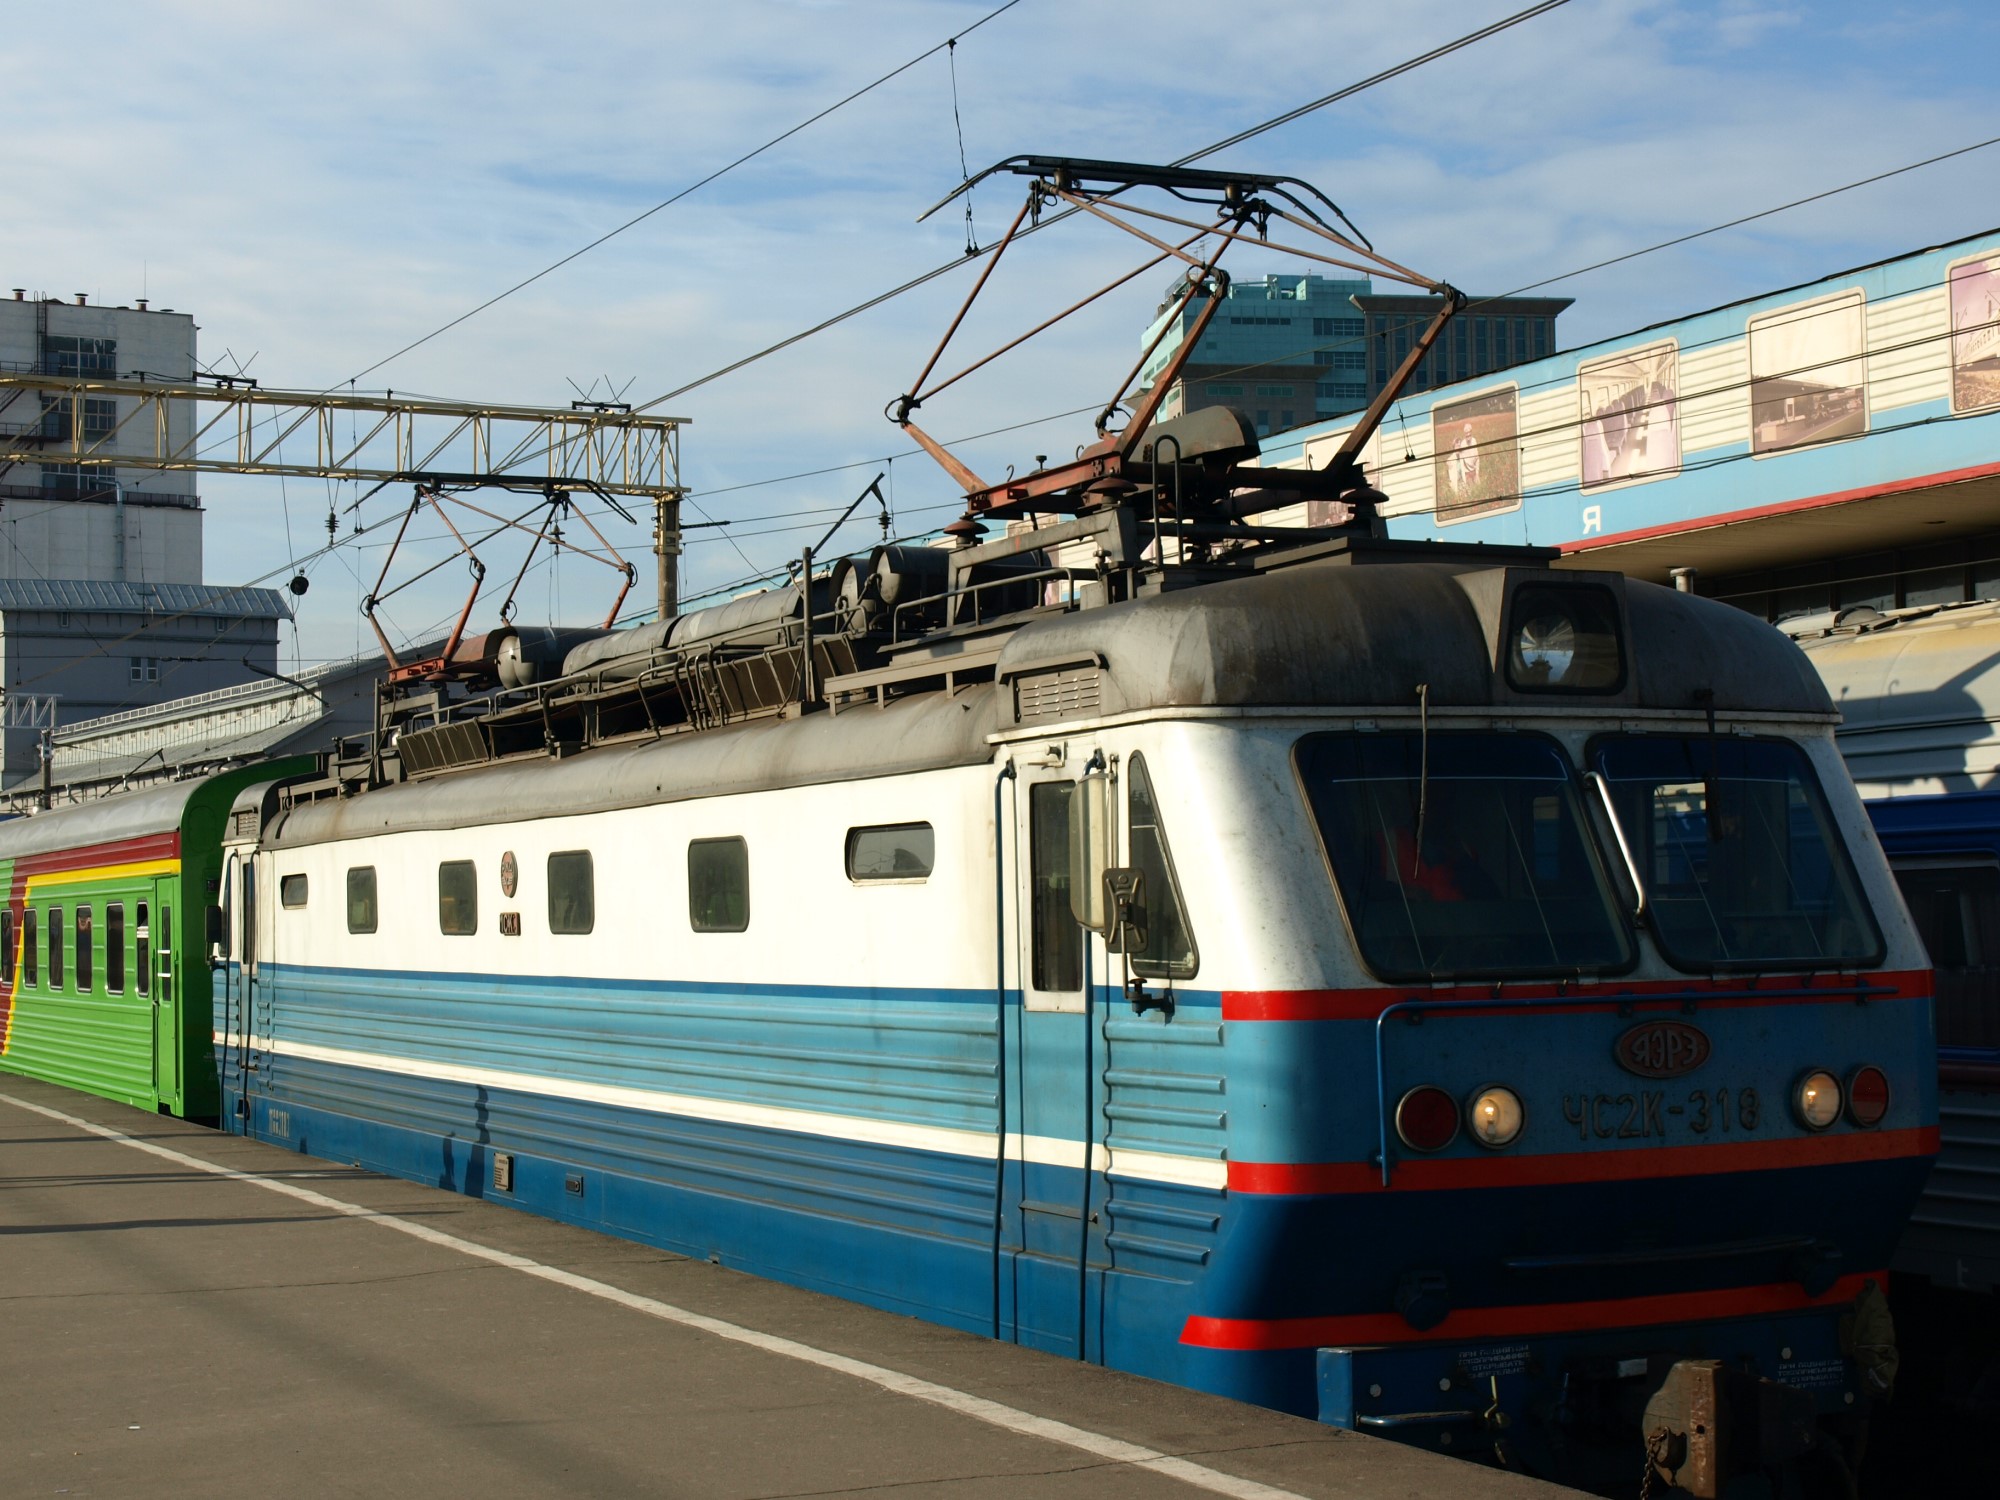 Réservez des billets de train nationaux et internationaux en Russie